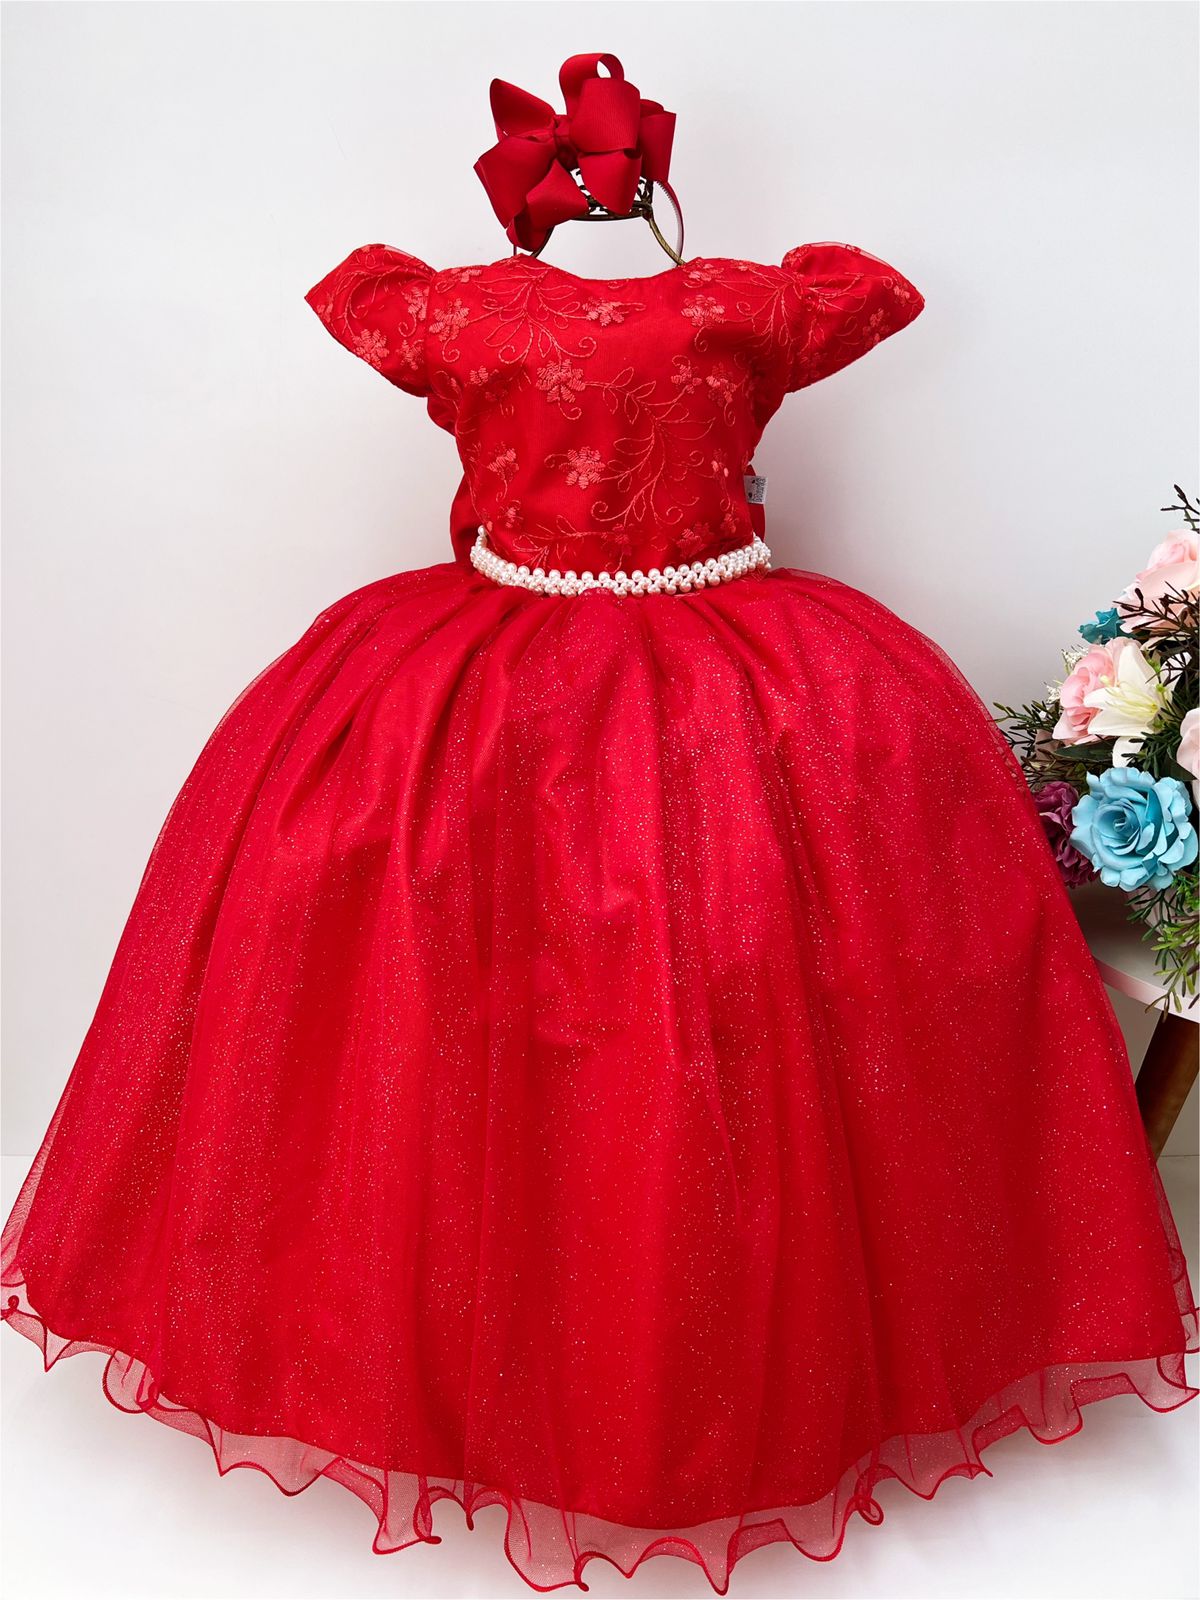 https://55564.cdn.simplo7.net/static/55564/sku/vestidos-damas-e-longos-marie-damas-longos-4-ao-16-vestido-infantil-dama-honra-vermelho-casamentos-renda-perola-1653683919306.jpg